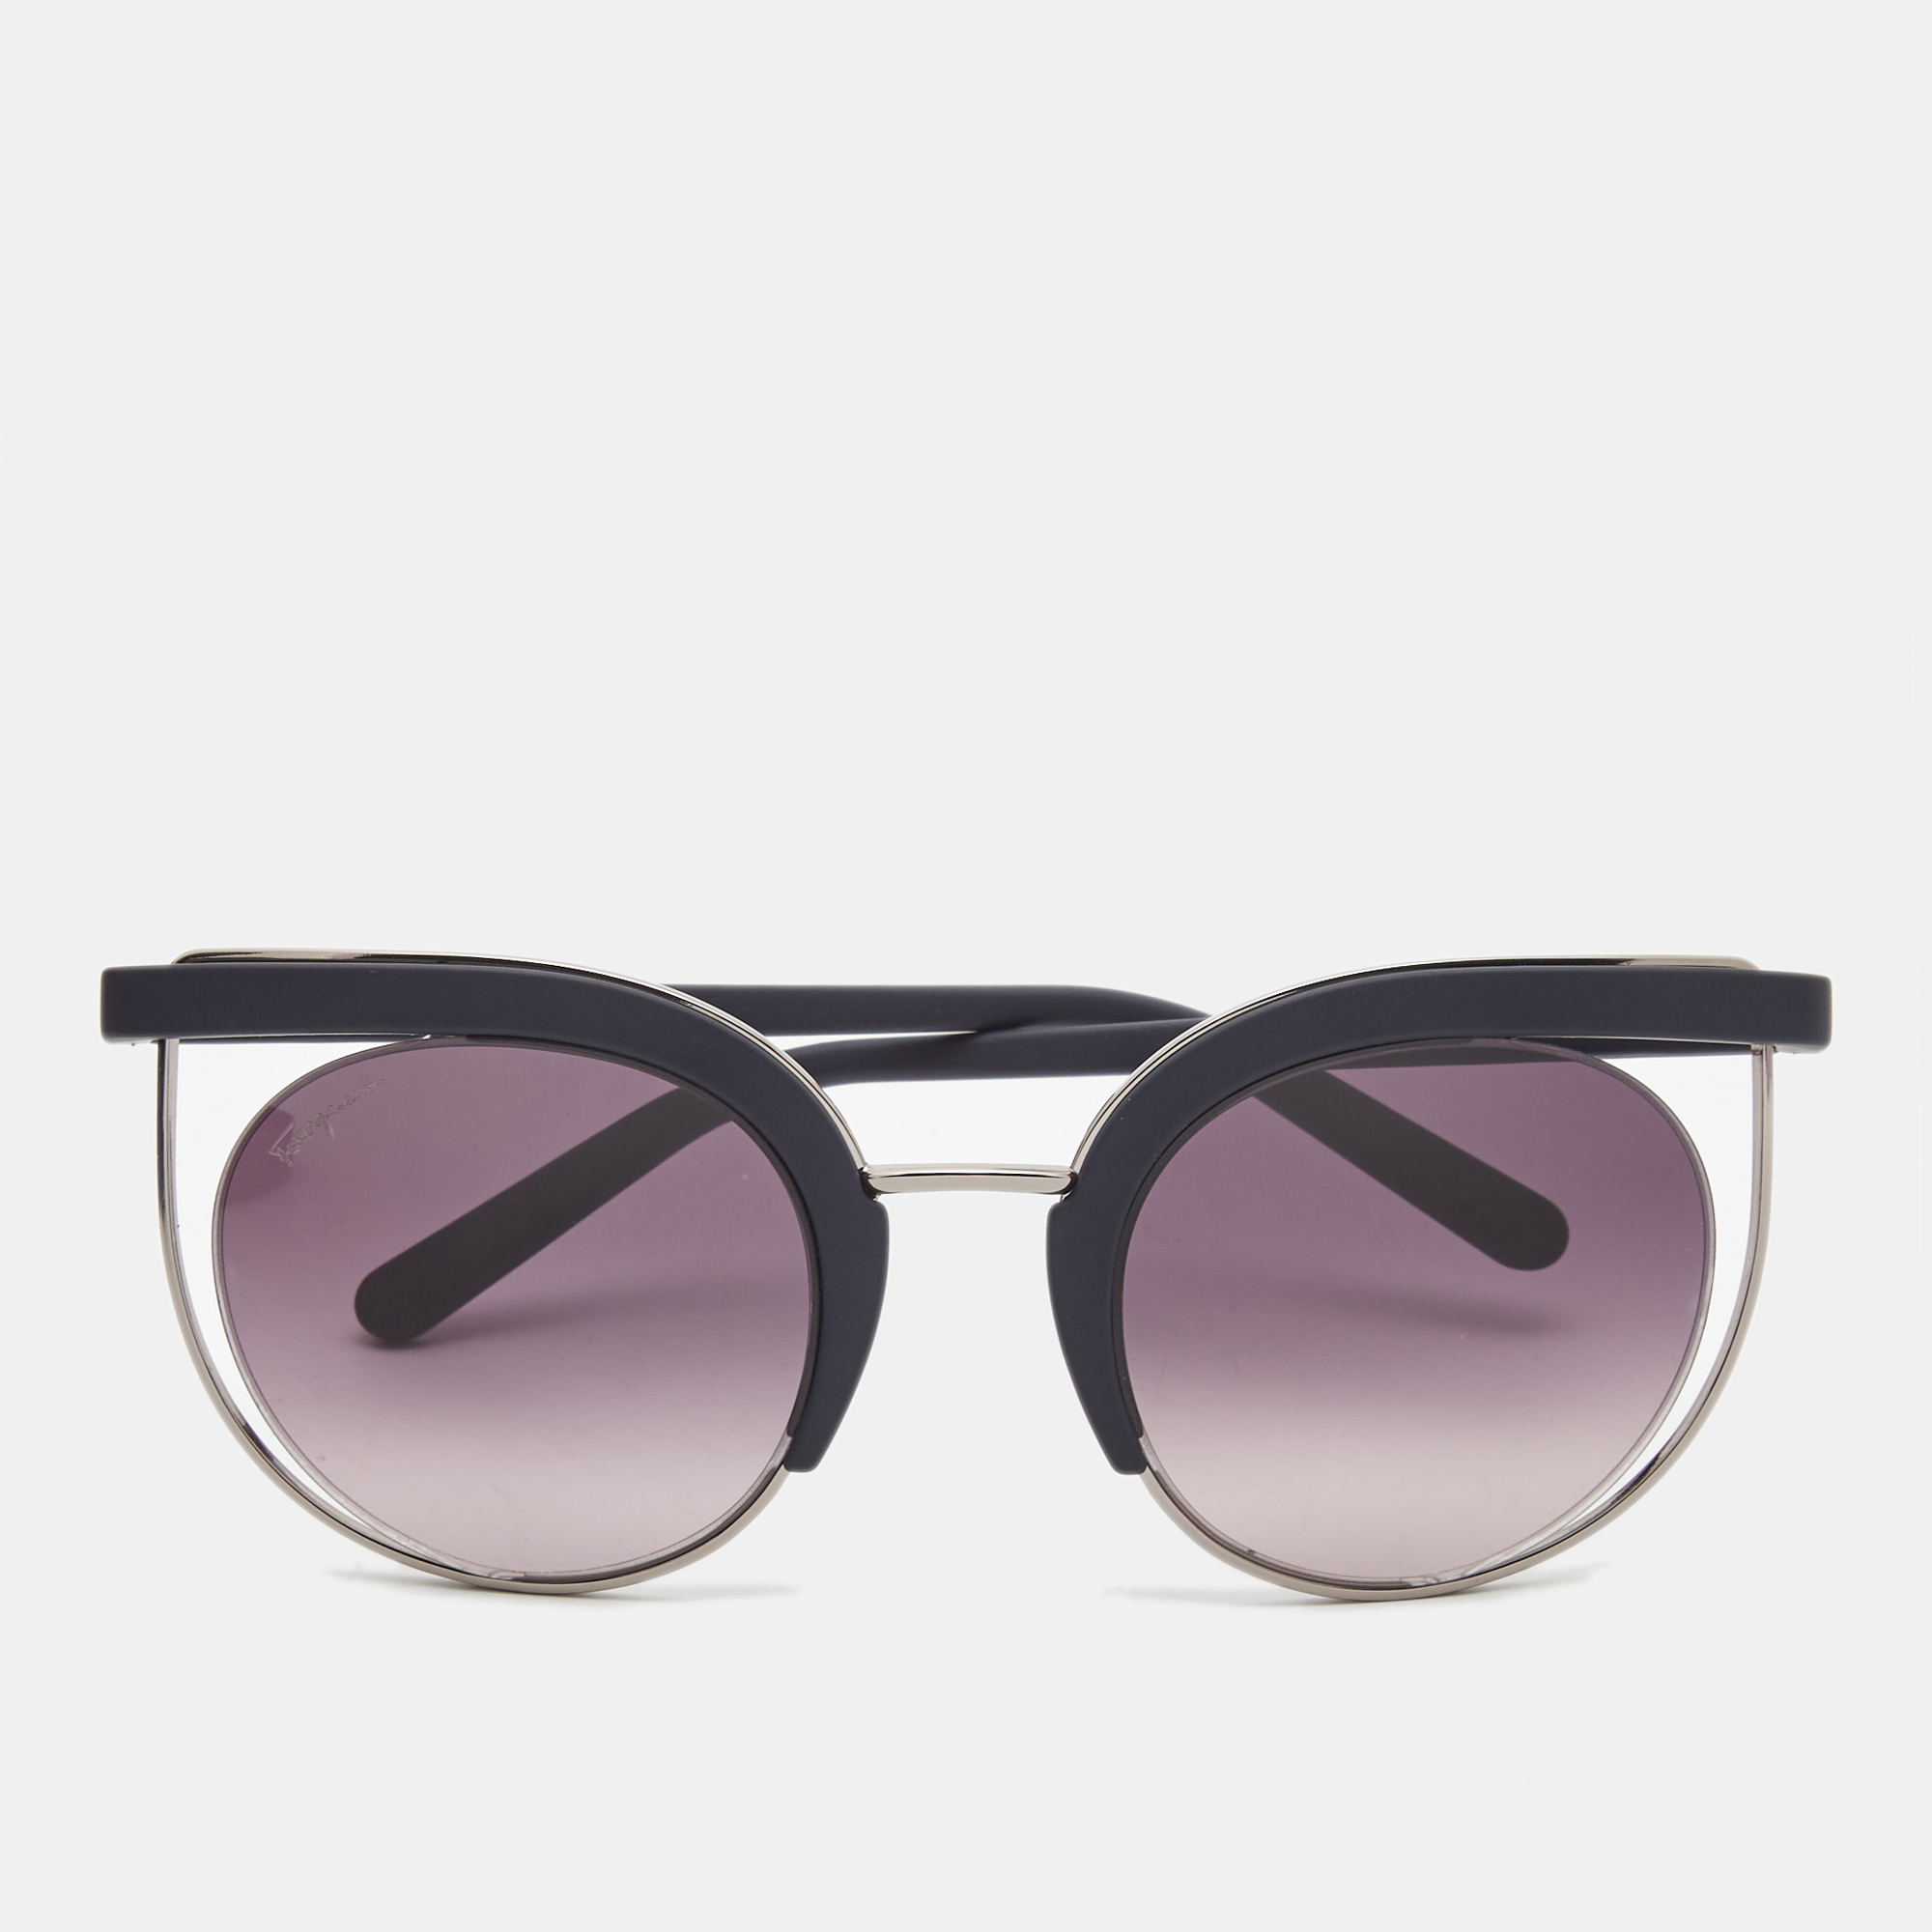 Salvatore ferragamo plum gradient sf909s cat eye sunglasses